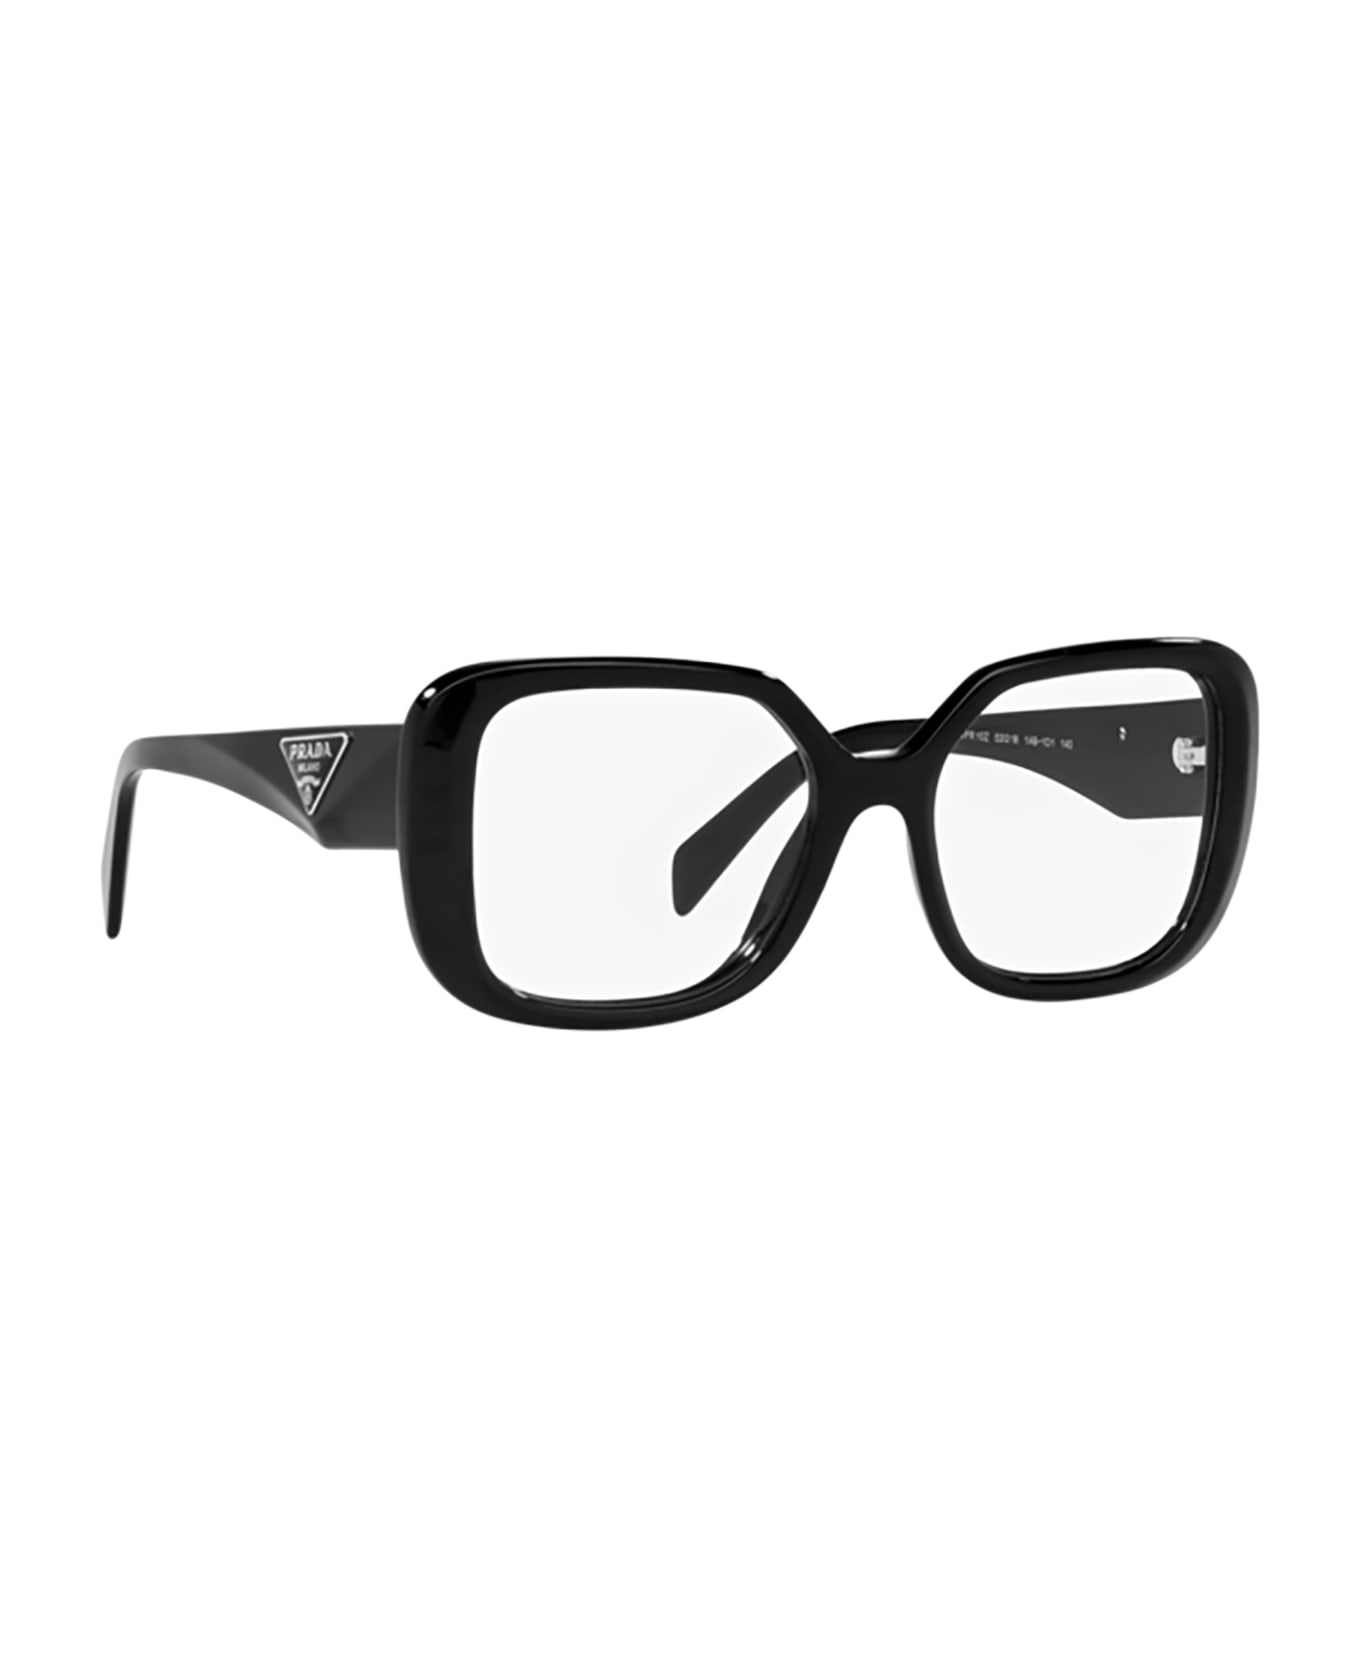 Prada Eyewear Pr 10zv Black Glasses - Black アイウェア